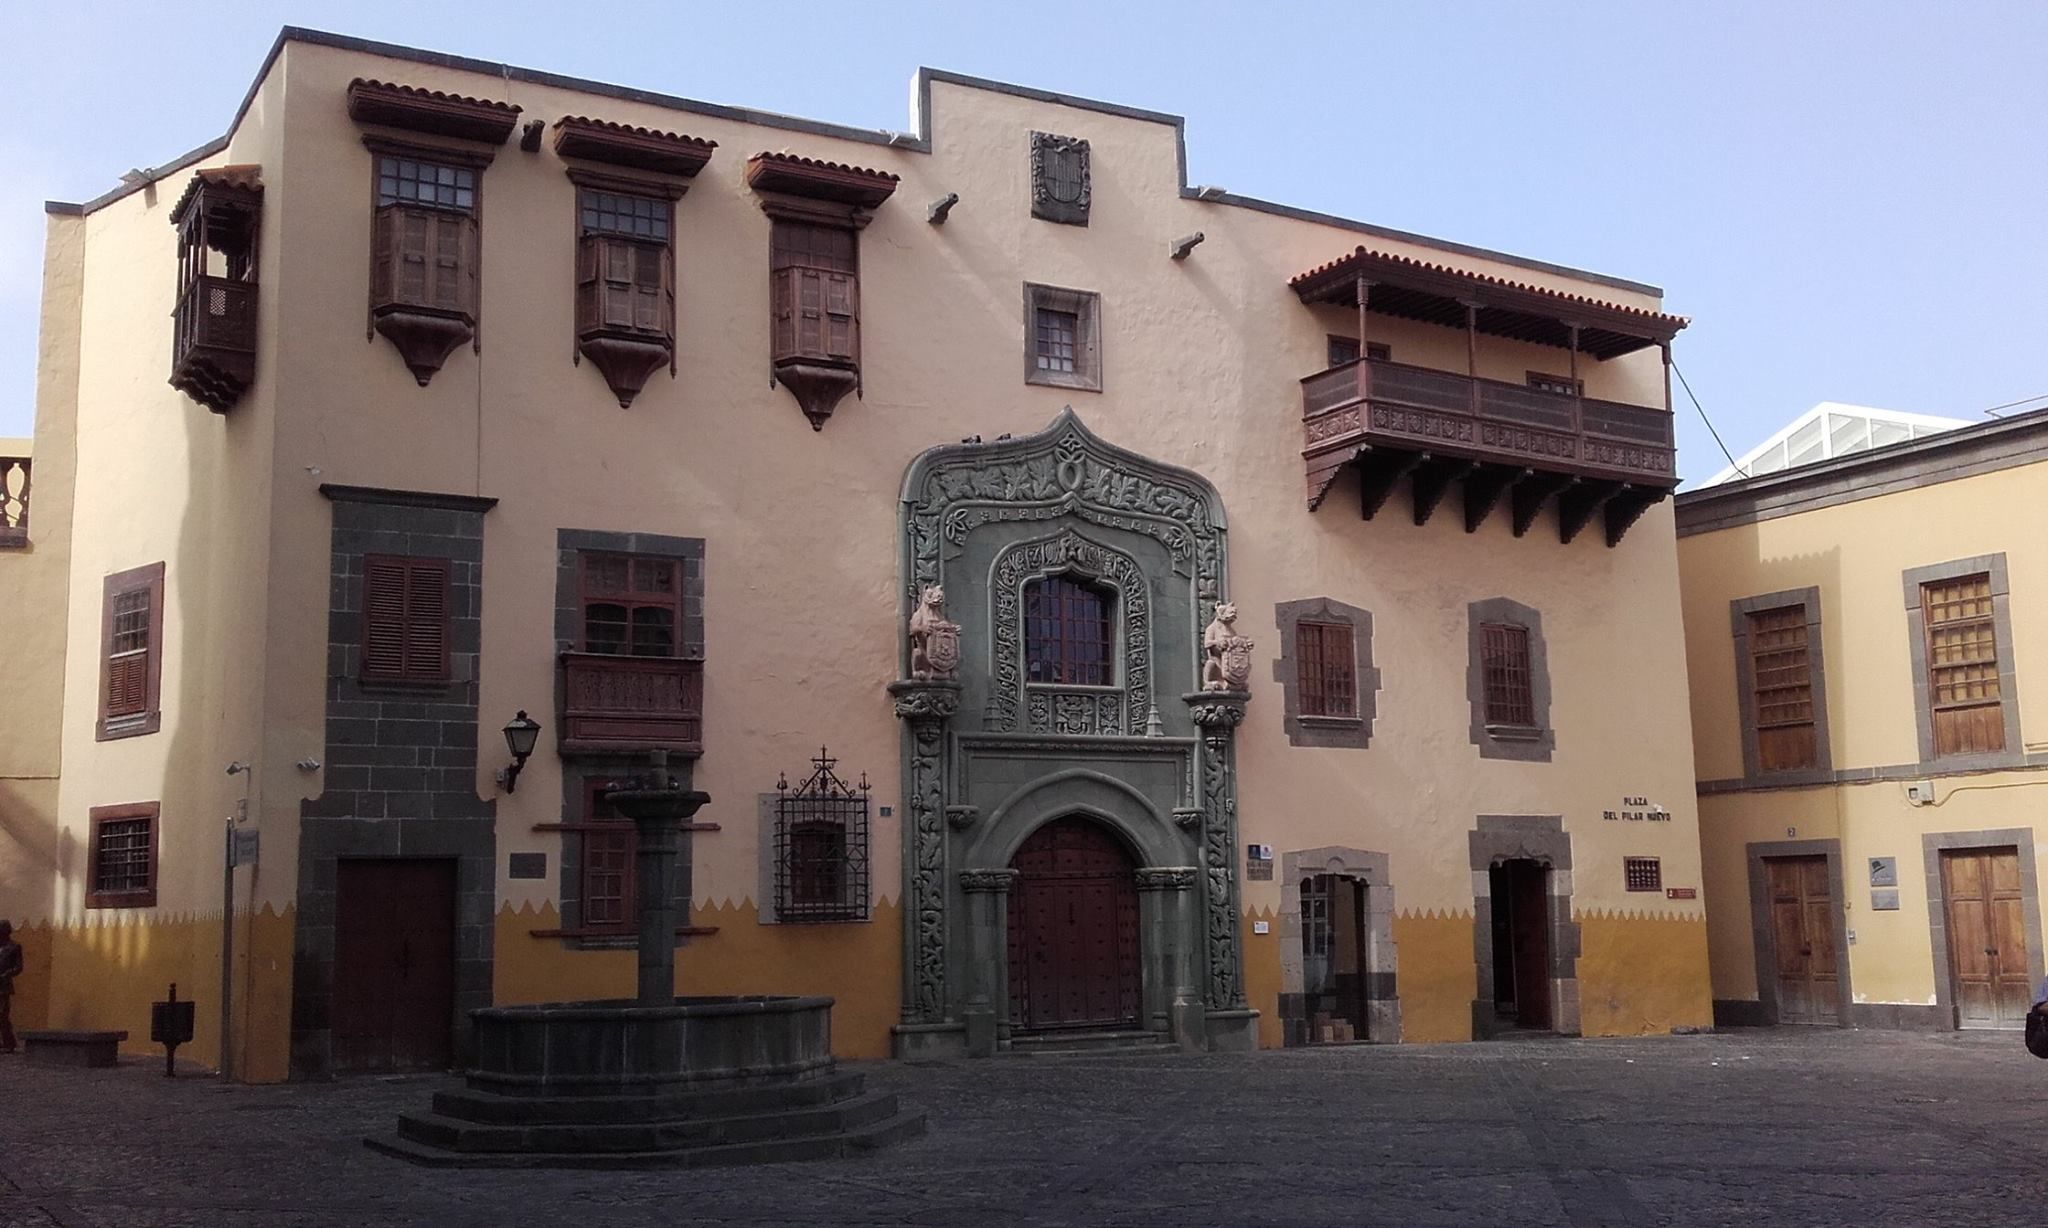 La Casa de Colón, Las Palmas, Canaries